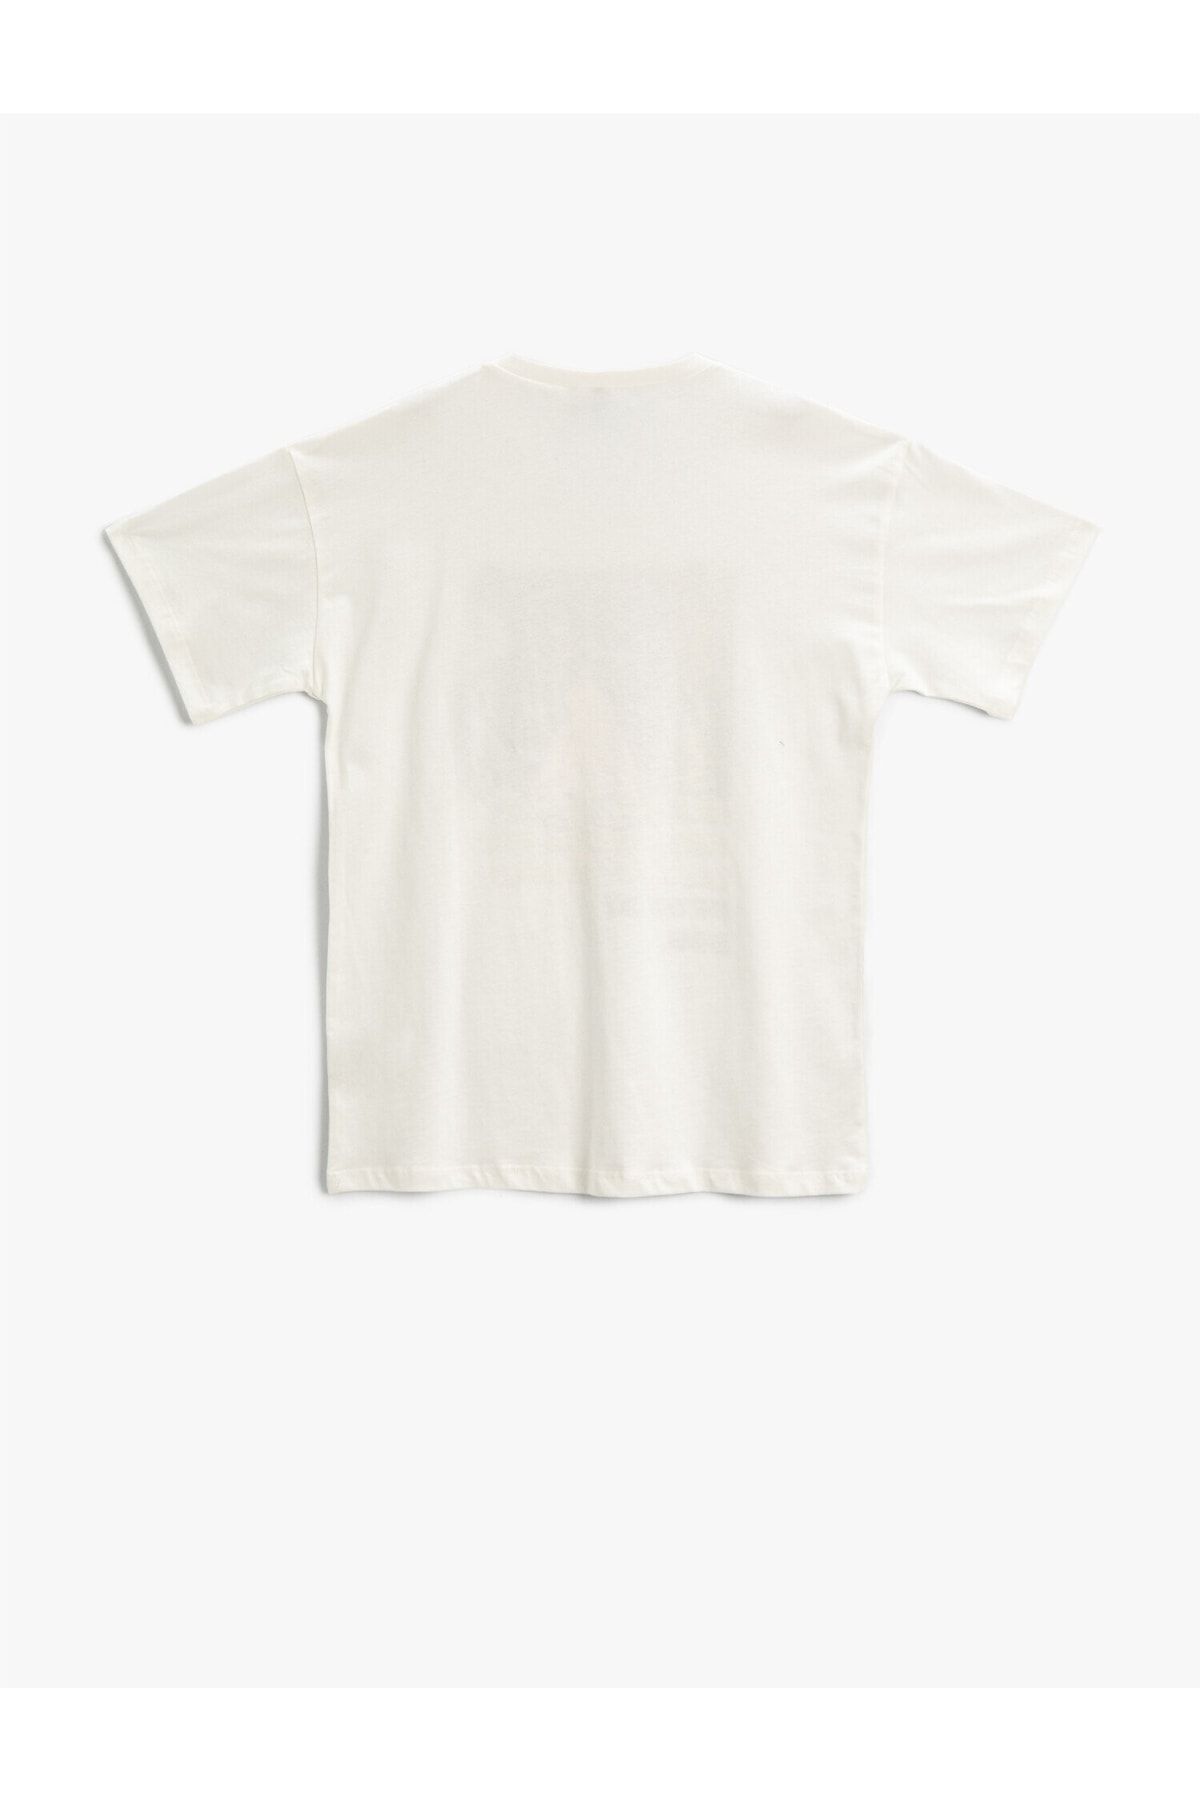 Koton تی شرت آستین کوتاه یقه نخی چاپ شده